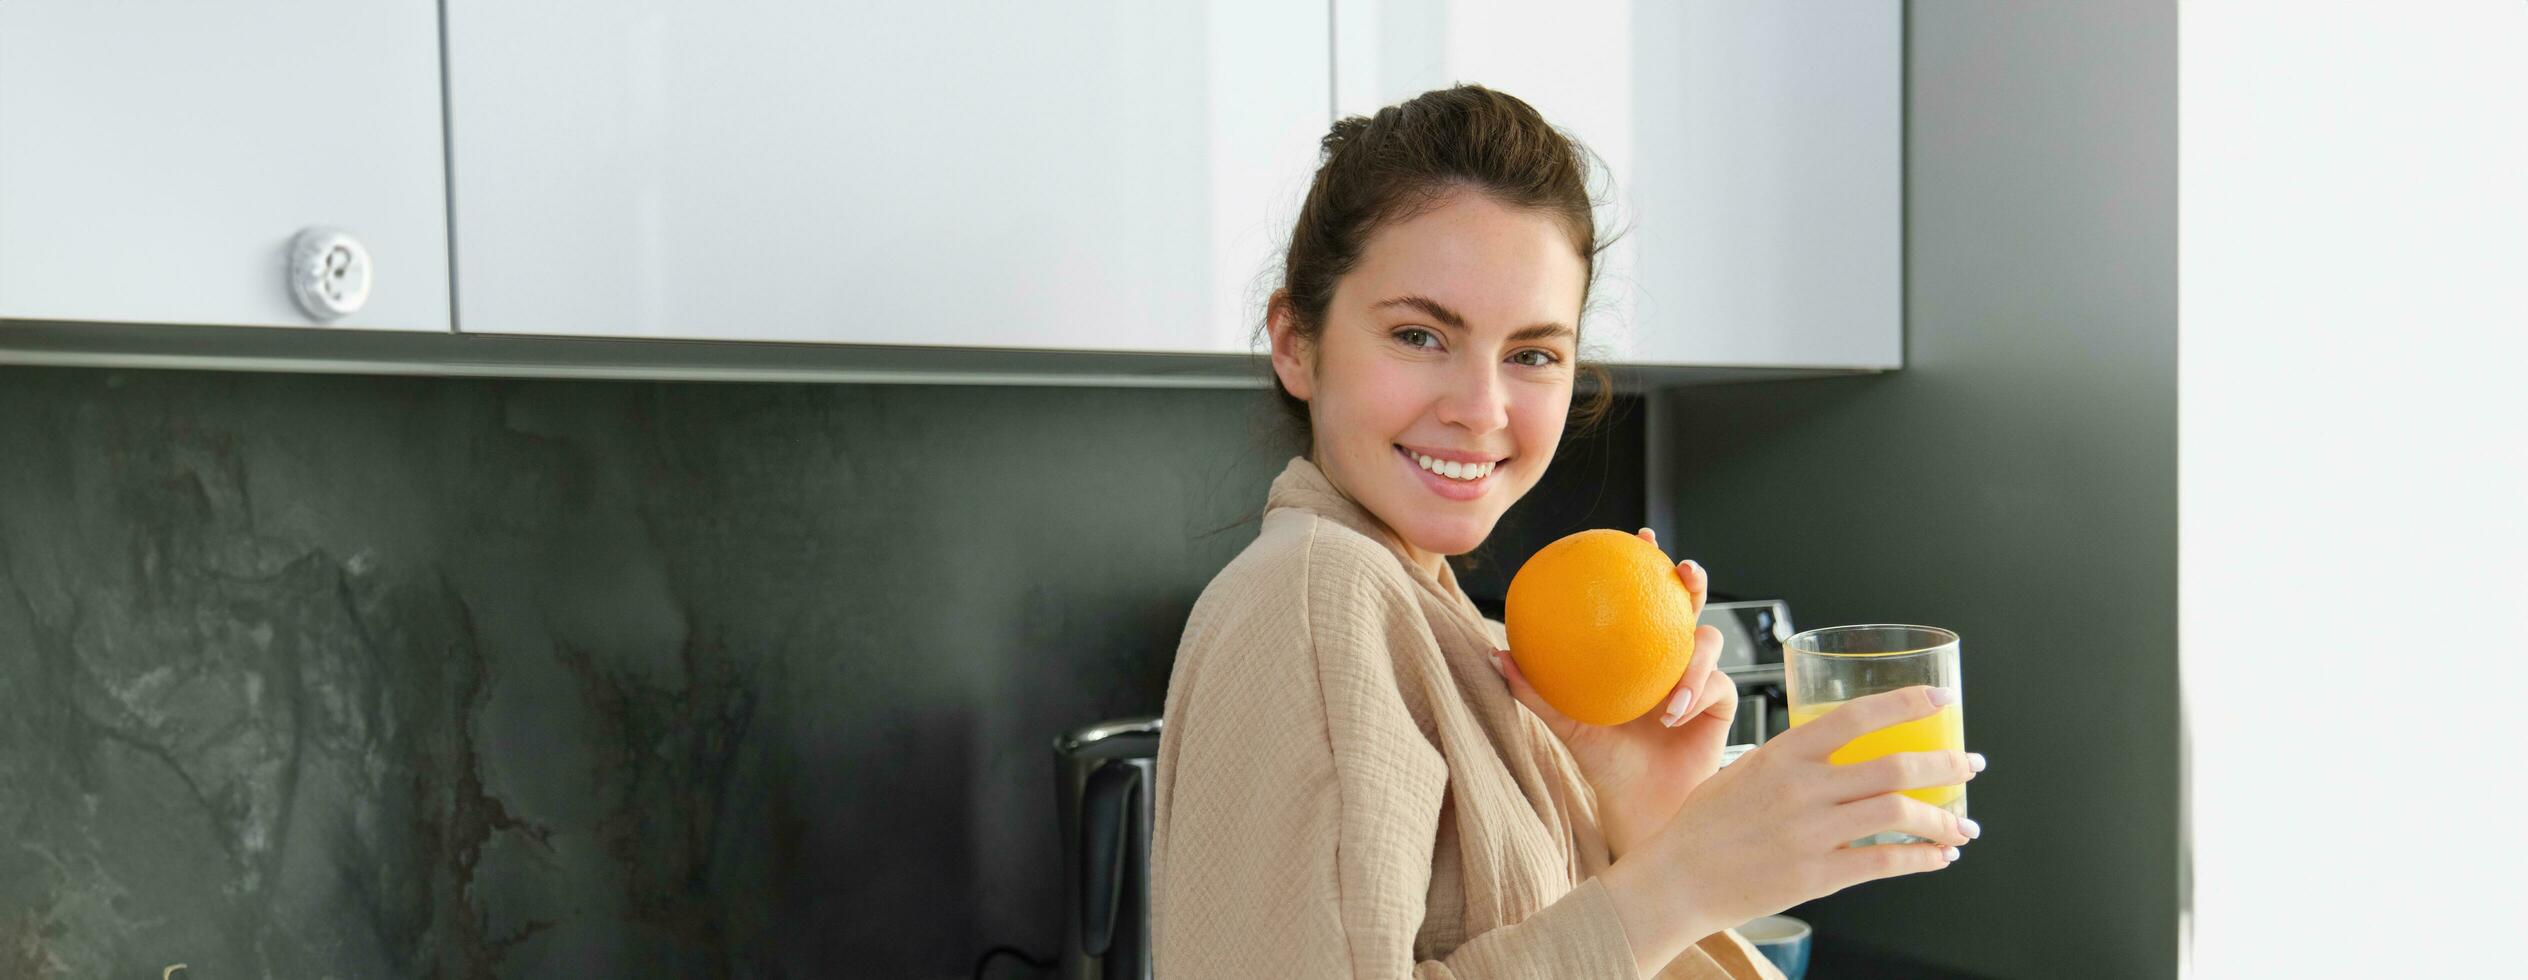 porträtt av Lycklig kvinna i kök, bär morgonrock, dricka orange juice, nyligen pressas dryck, leende och skrattande, mat och dryck begrepp foto